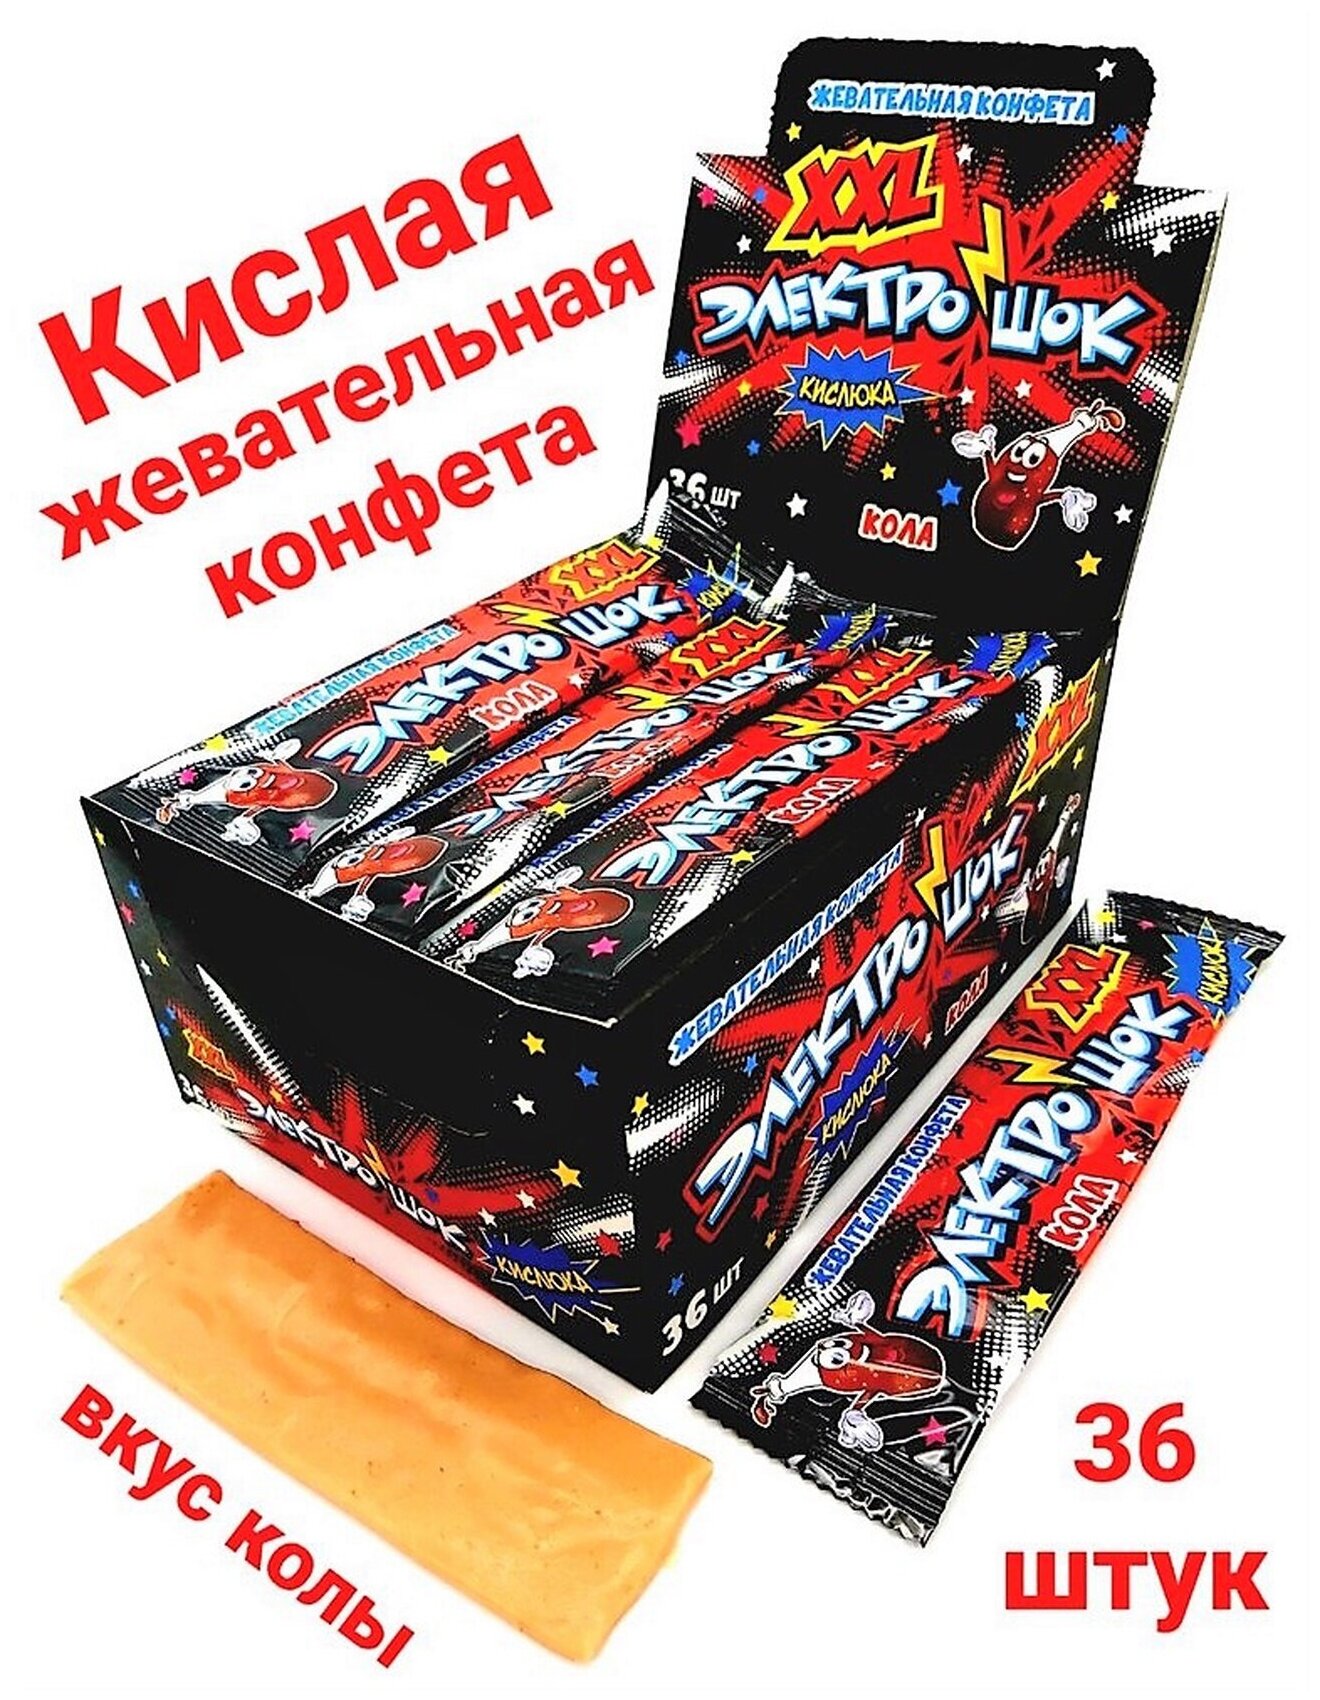 Жевательная конфета электрошок XXL со вкусом колы, 36 штук по 25 грамм